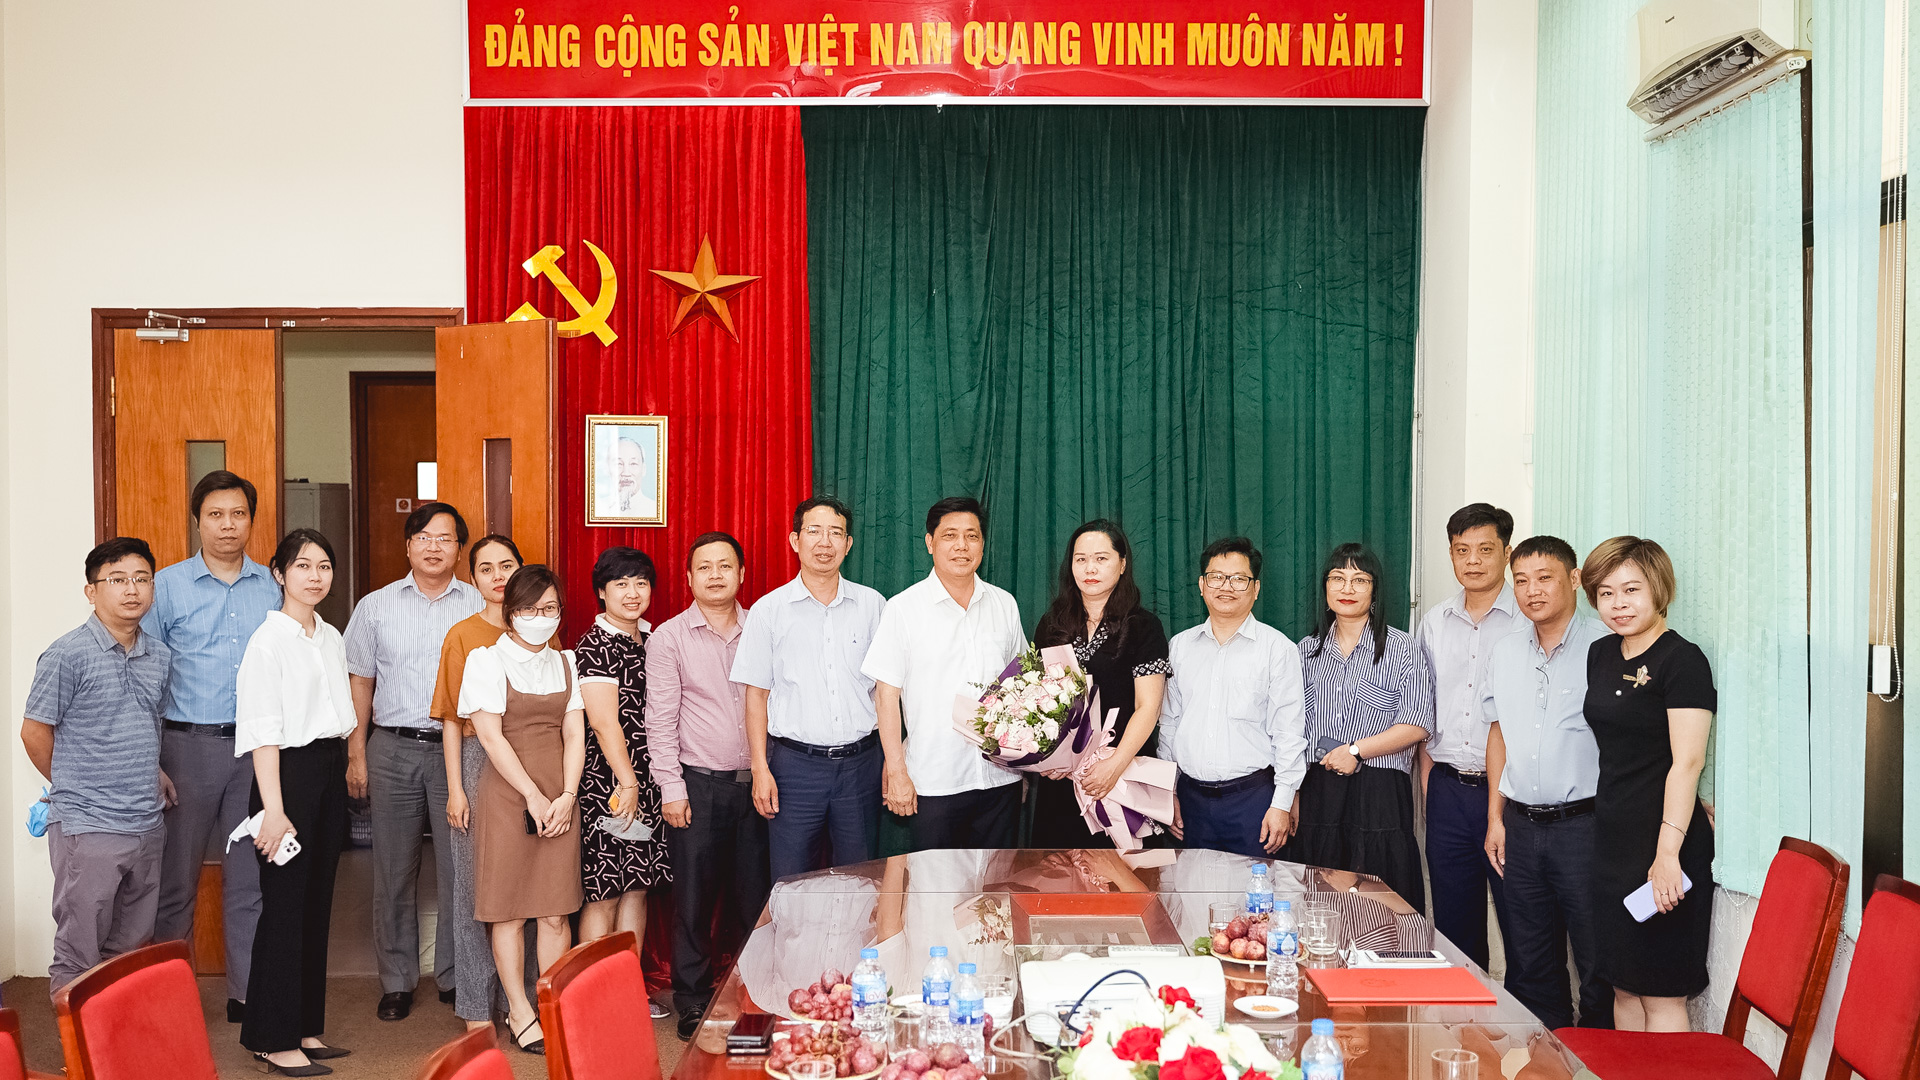 Thứ trưởng Nguyễn Ngọc Đông đánh giá cao thành tựu của tập thể cán bộ, phóng viên, biên tập viên Tạp chí GTVT và mong muốn, Tạp chí sẽ tiếp tục giữ vững vị thế và phát triển bền vững.